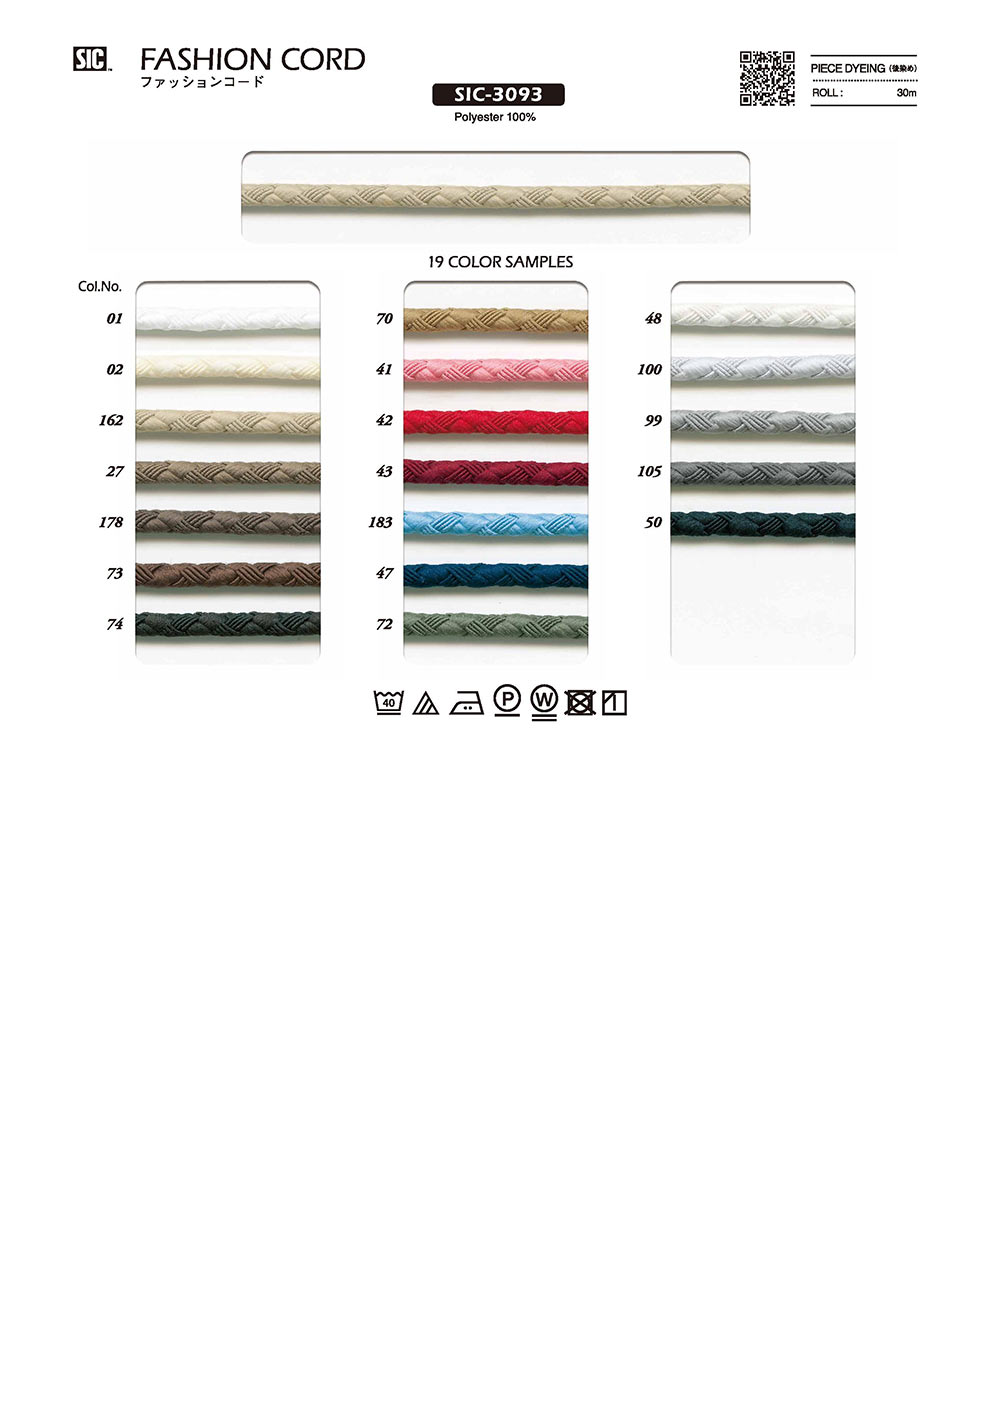 SIC-3093 Fashion Cord[Ribbon Tape Cord] SHINDO(SIC)